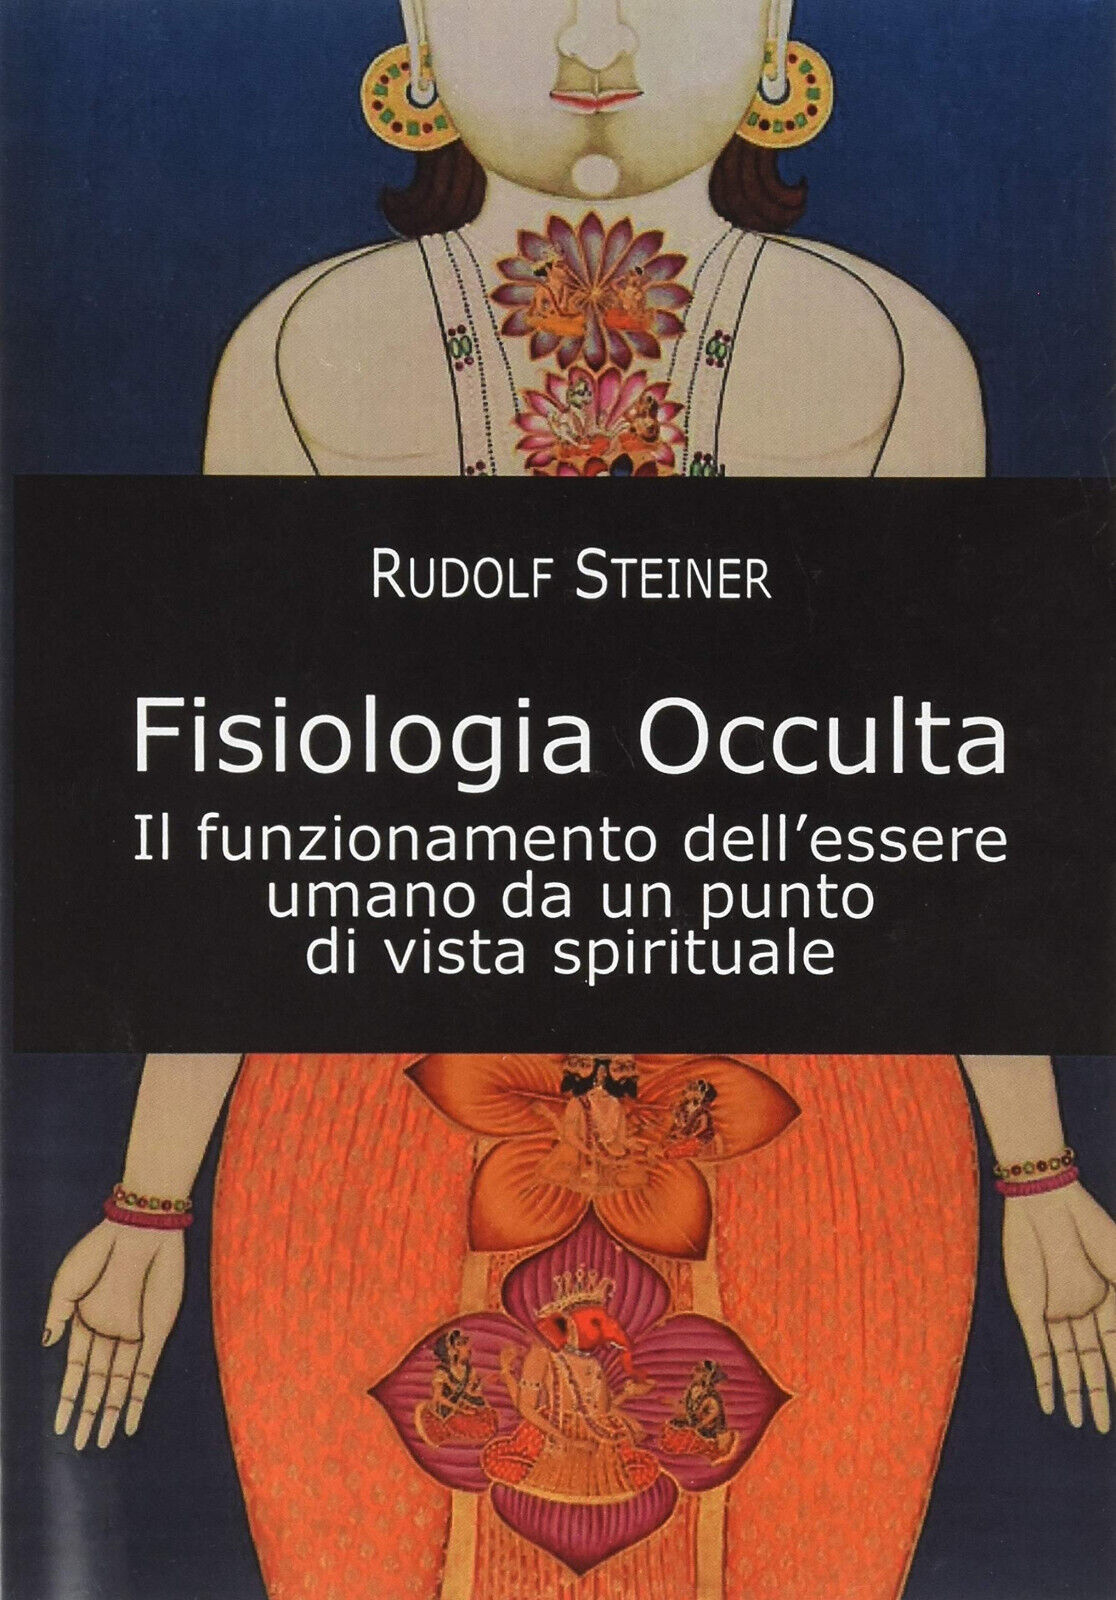 Fisiologia occulta - Rudolf Steiner - Cerchio della Luna, 2020